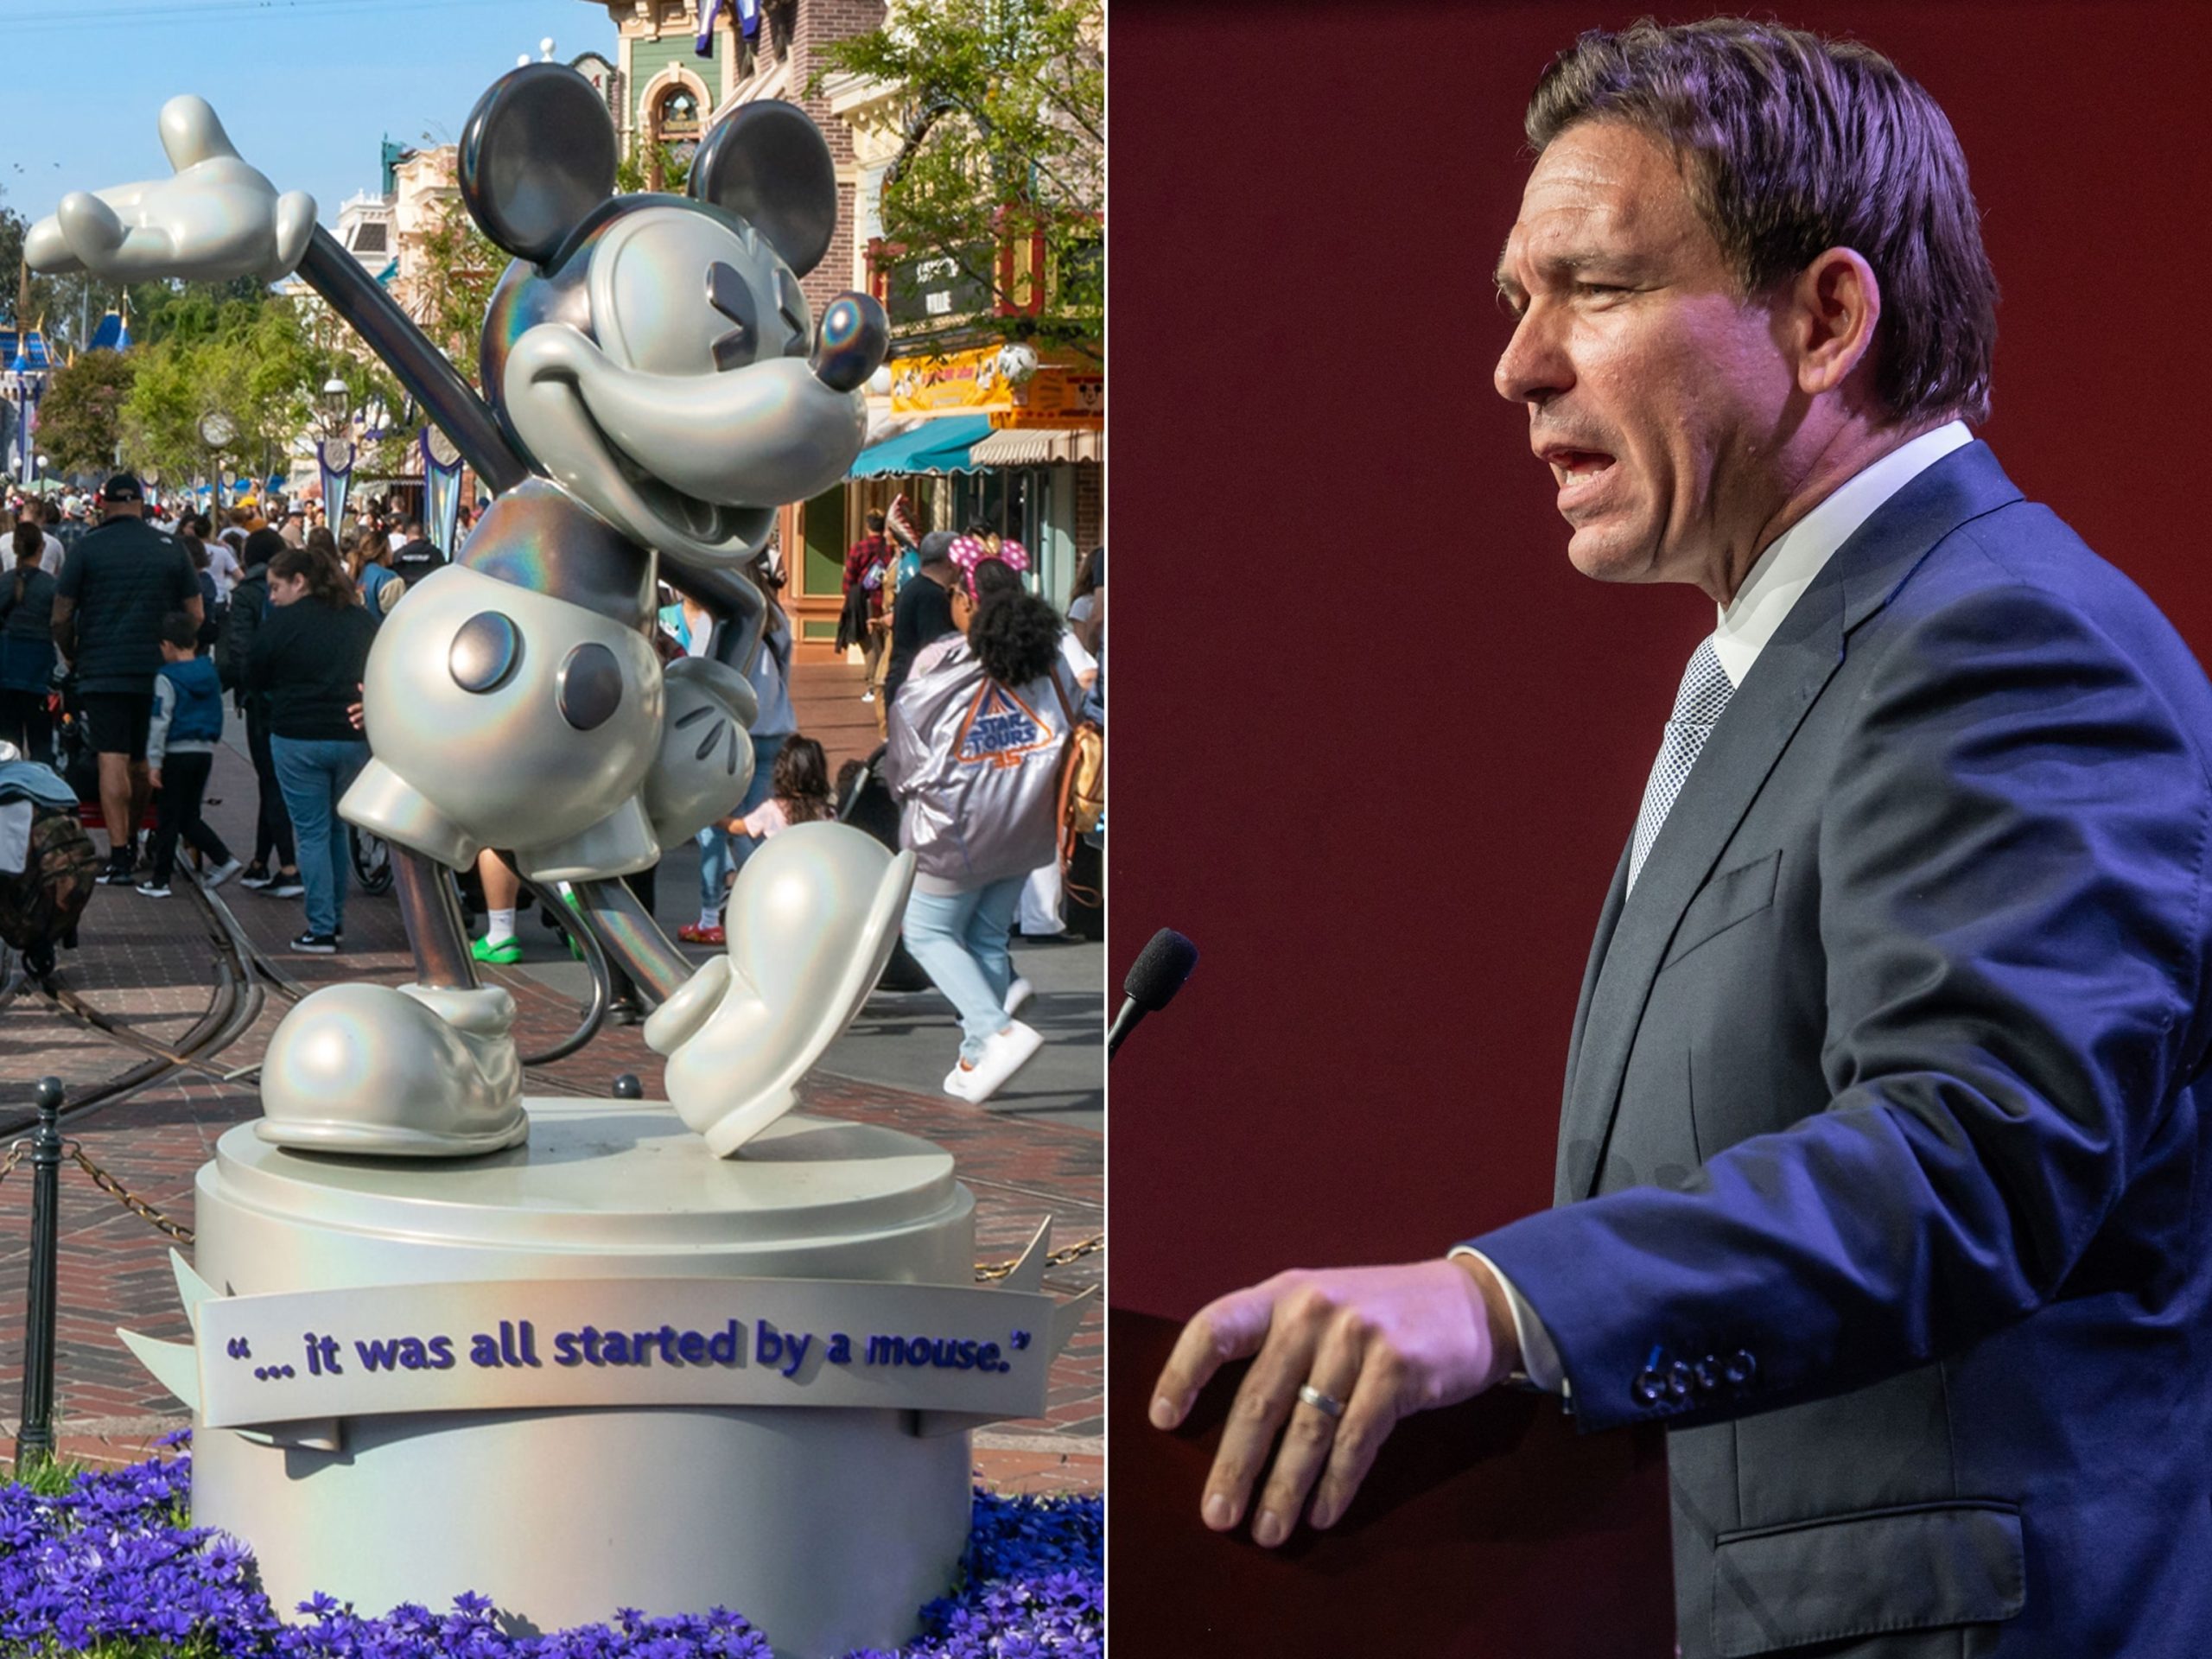 Disney's Lawsuit Against DeSantis Shifts Focus to Free Speech Concerns